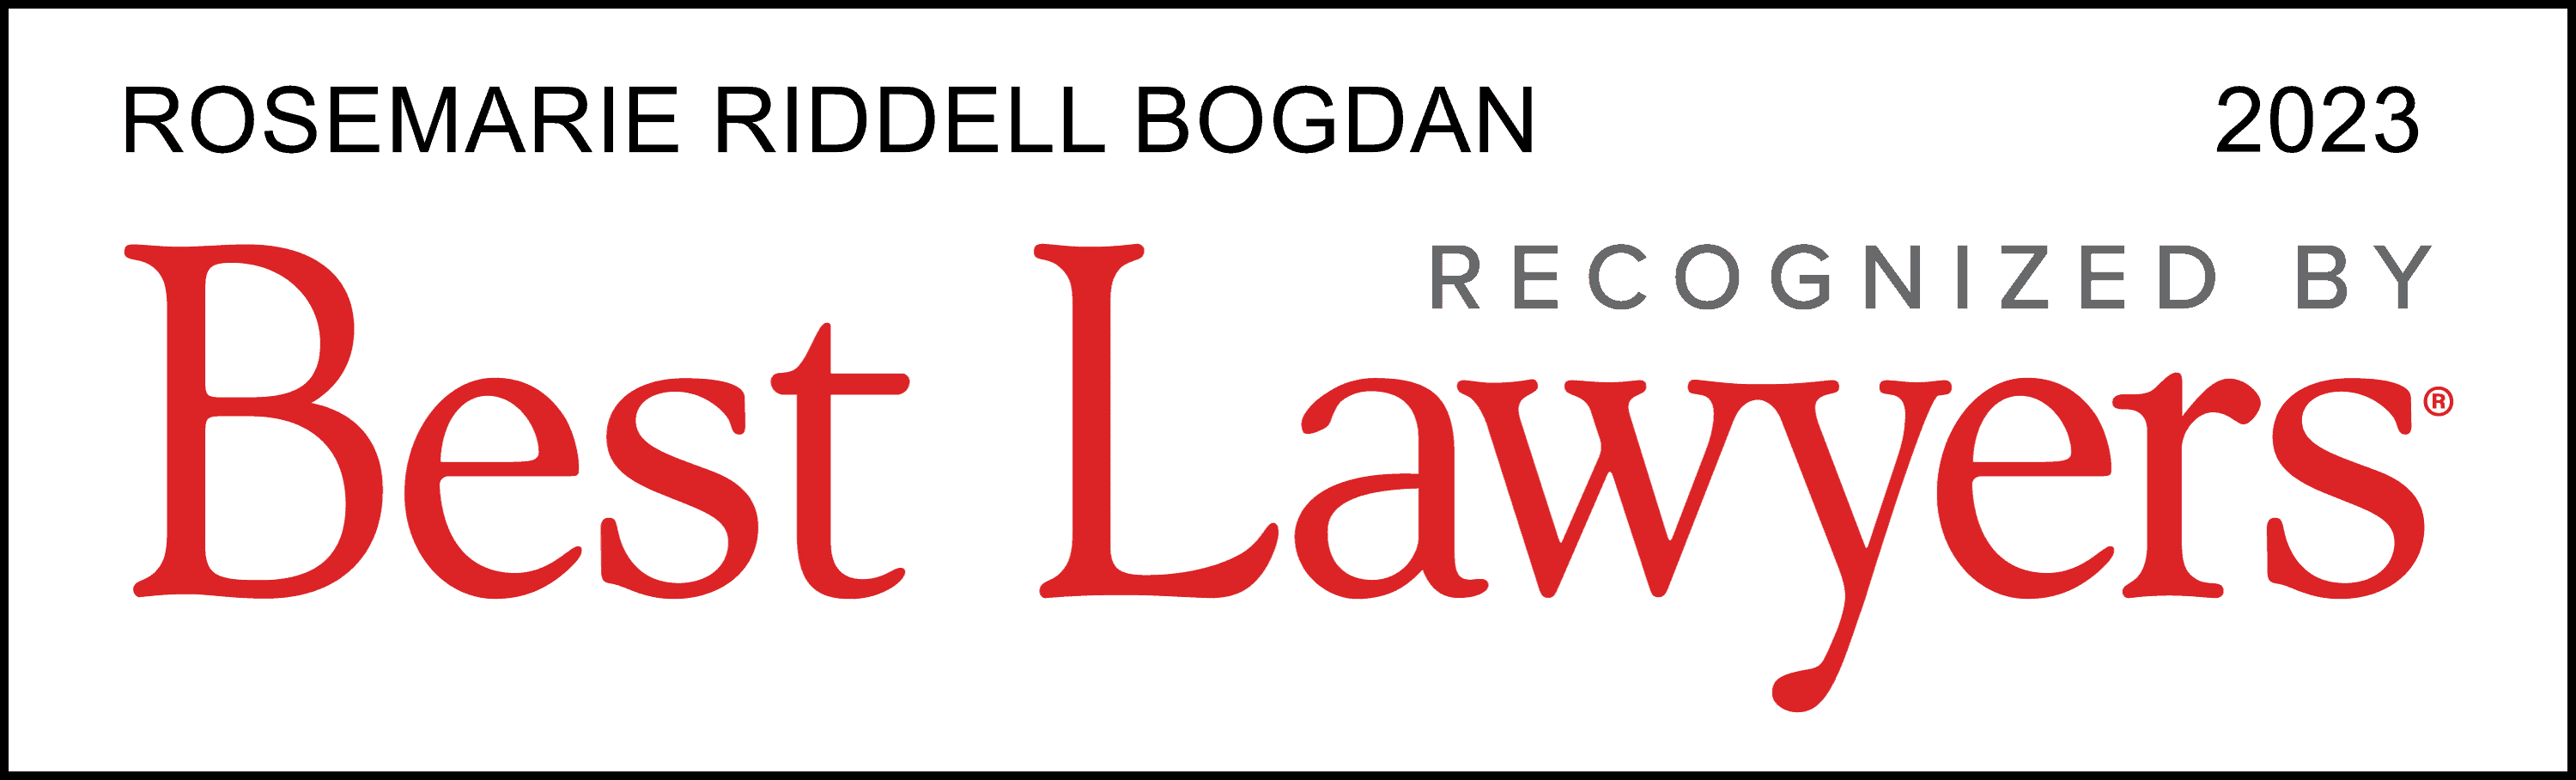 Rosemarie Riddell Bogdan Best Lawyer